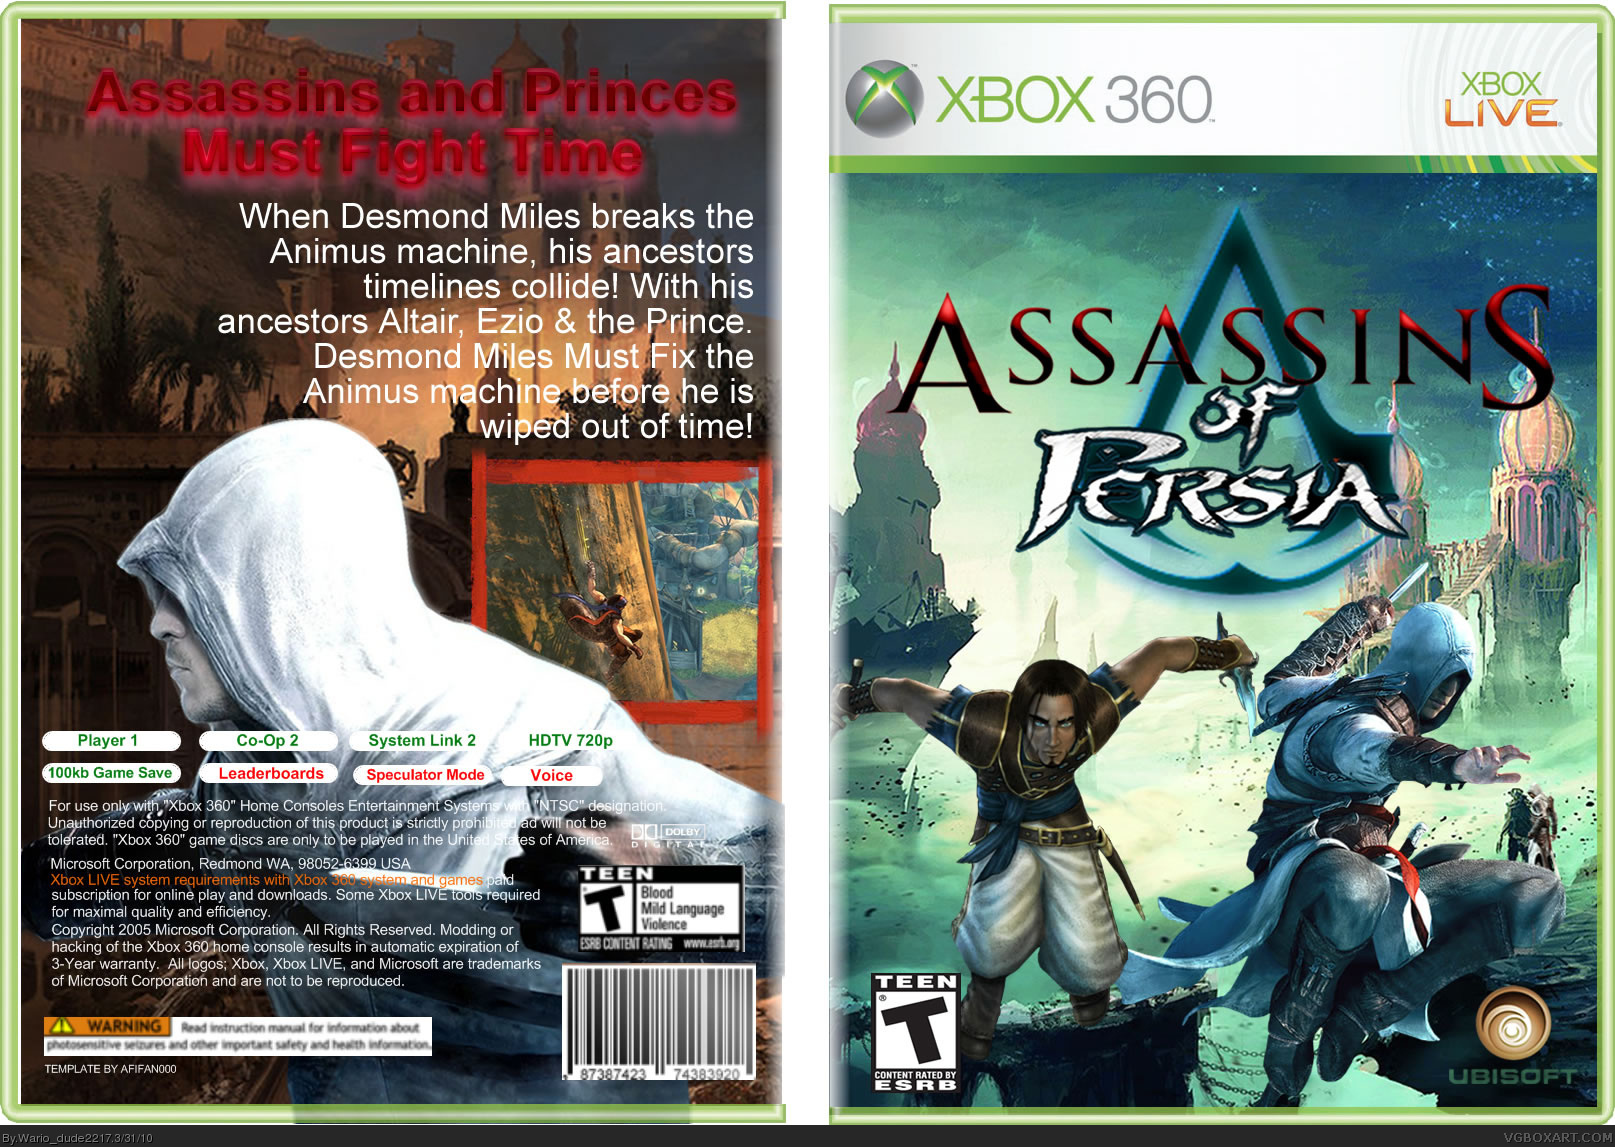 Assassin's Of Persia box cover